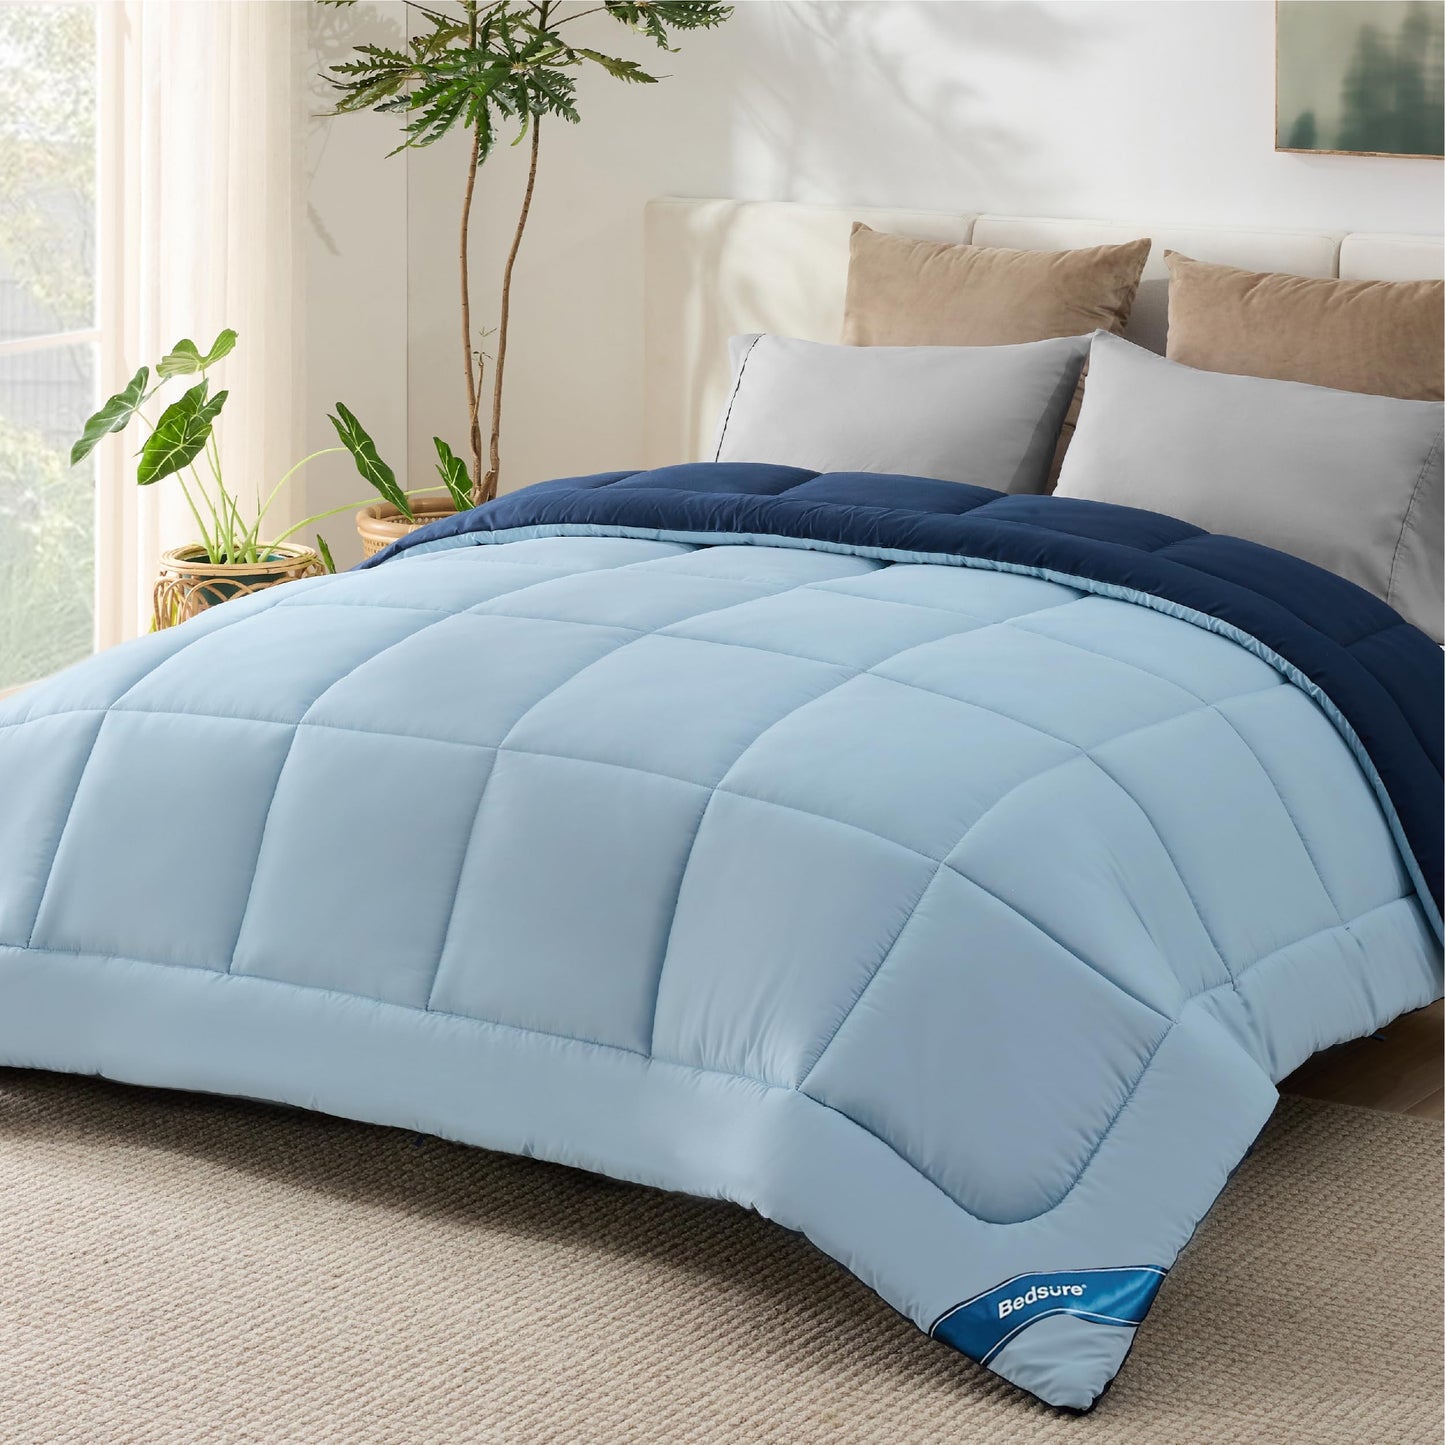 Bedsure Full Reversible Comforter Duvet Insert - All Season Quilted Comforters Full Size, Down Alternative Full Size Bedding Comforter with Corner Tabs - Blue/Light Blue